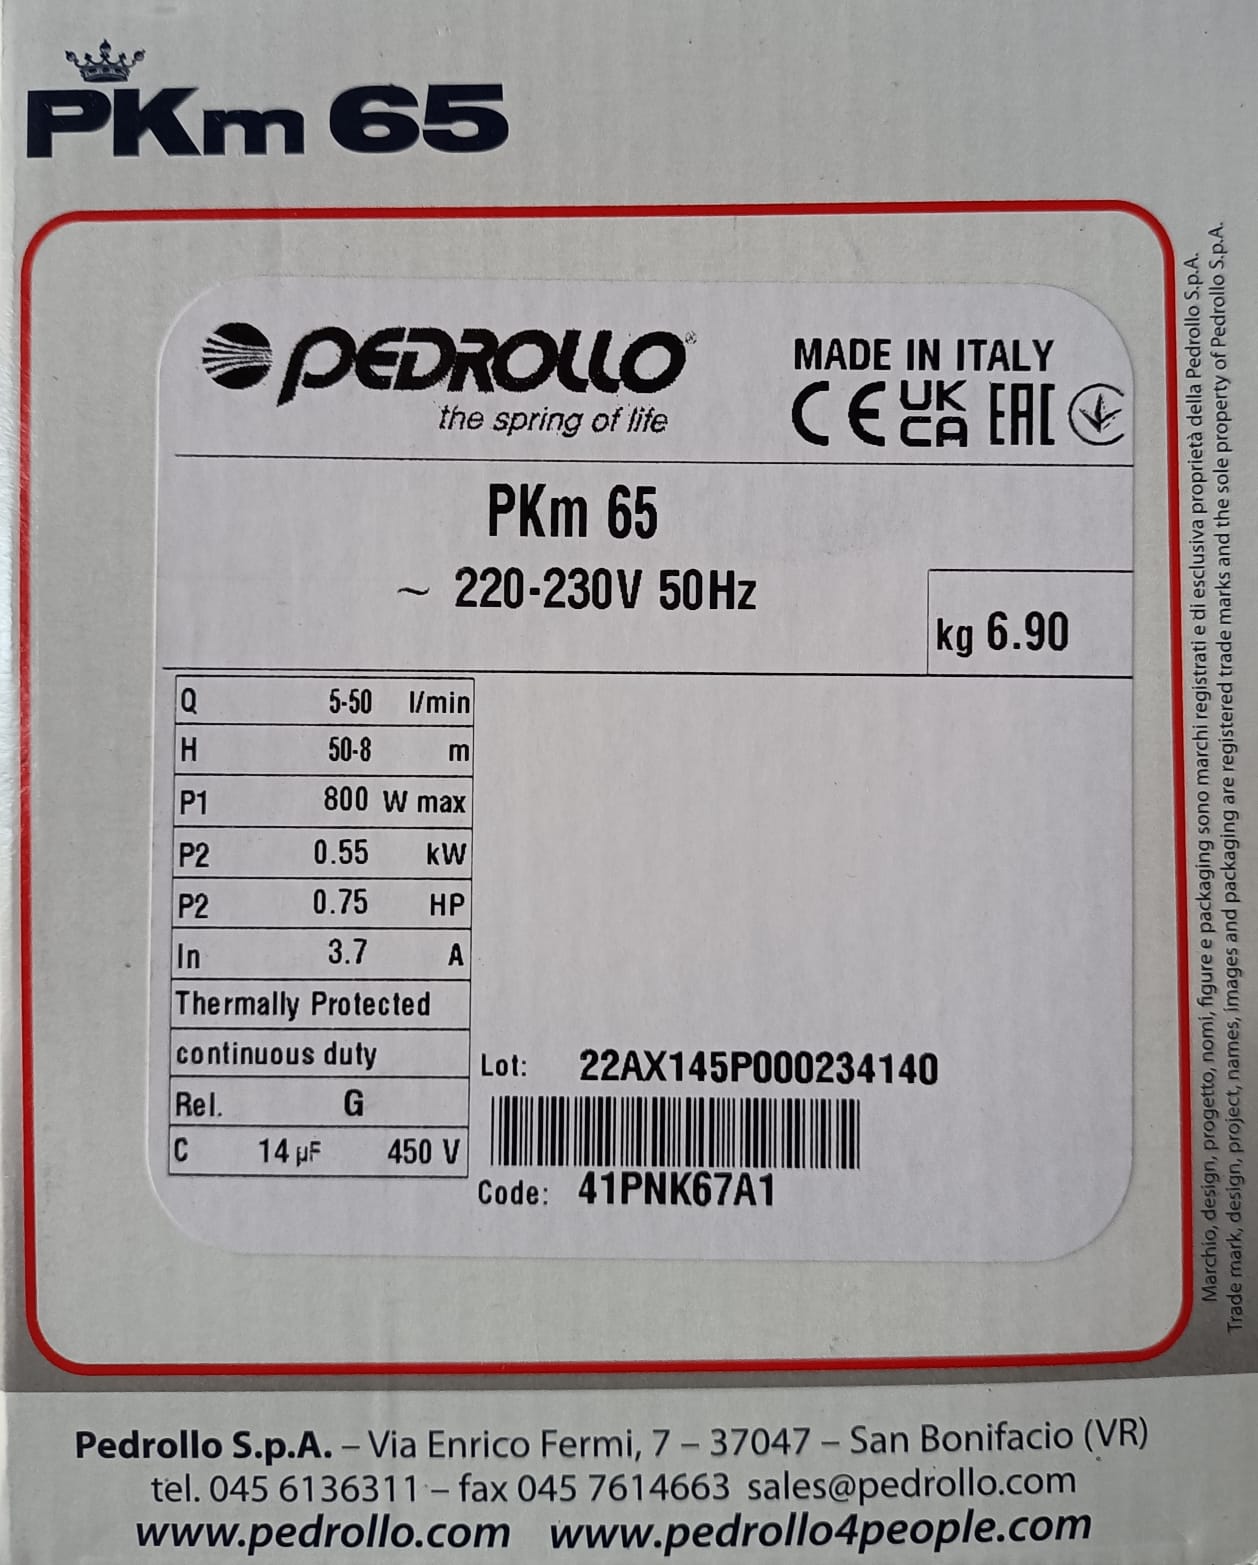 Elettropompa Pedrollo PKm 65 HP 0,70 con girante periferica monofase